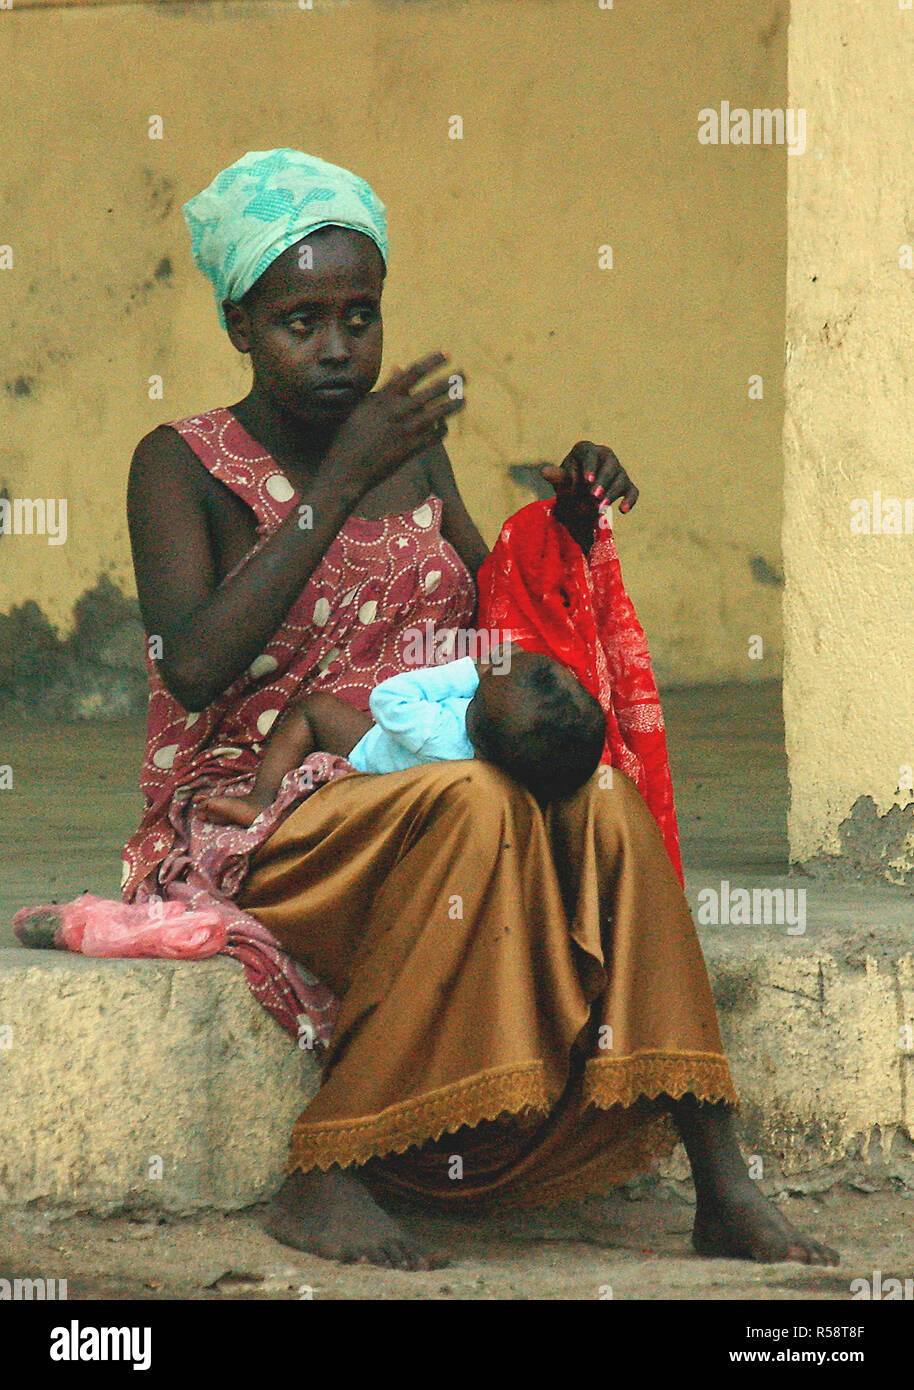 2003 - Dans les rues de Djibouti, de l'Afrique, une femme djiboutienne s'occupe de son bébé lors de l'opération ENDURING FREEDOM. Banque D'Images